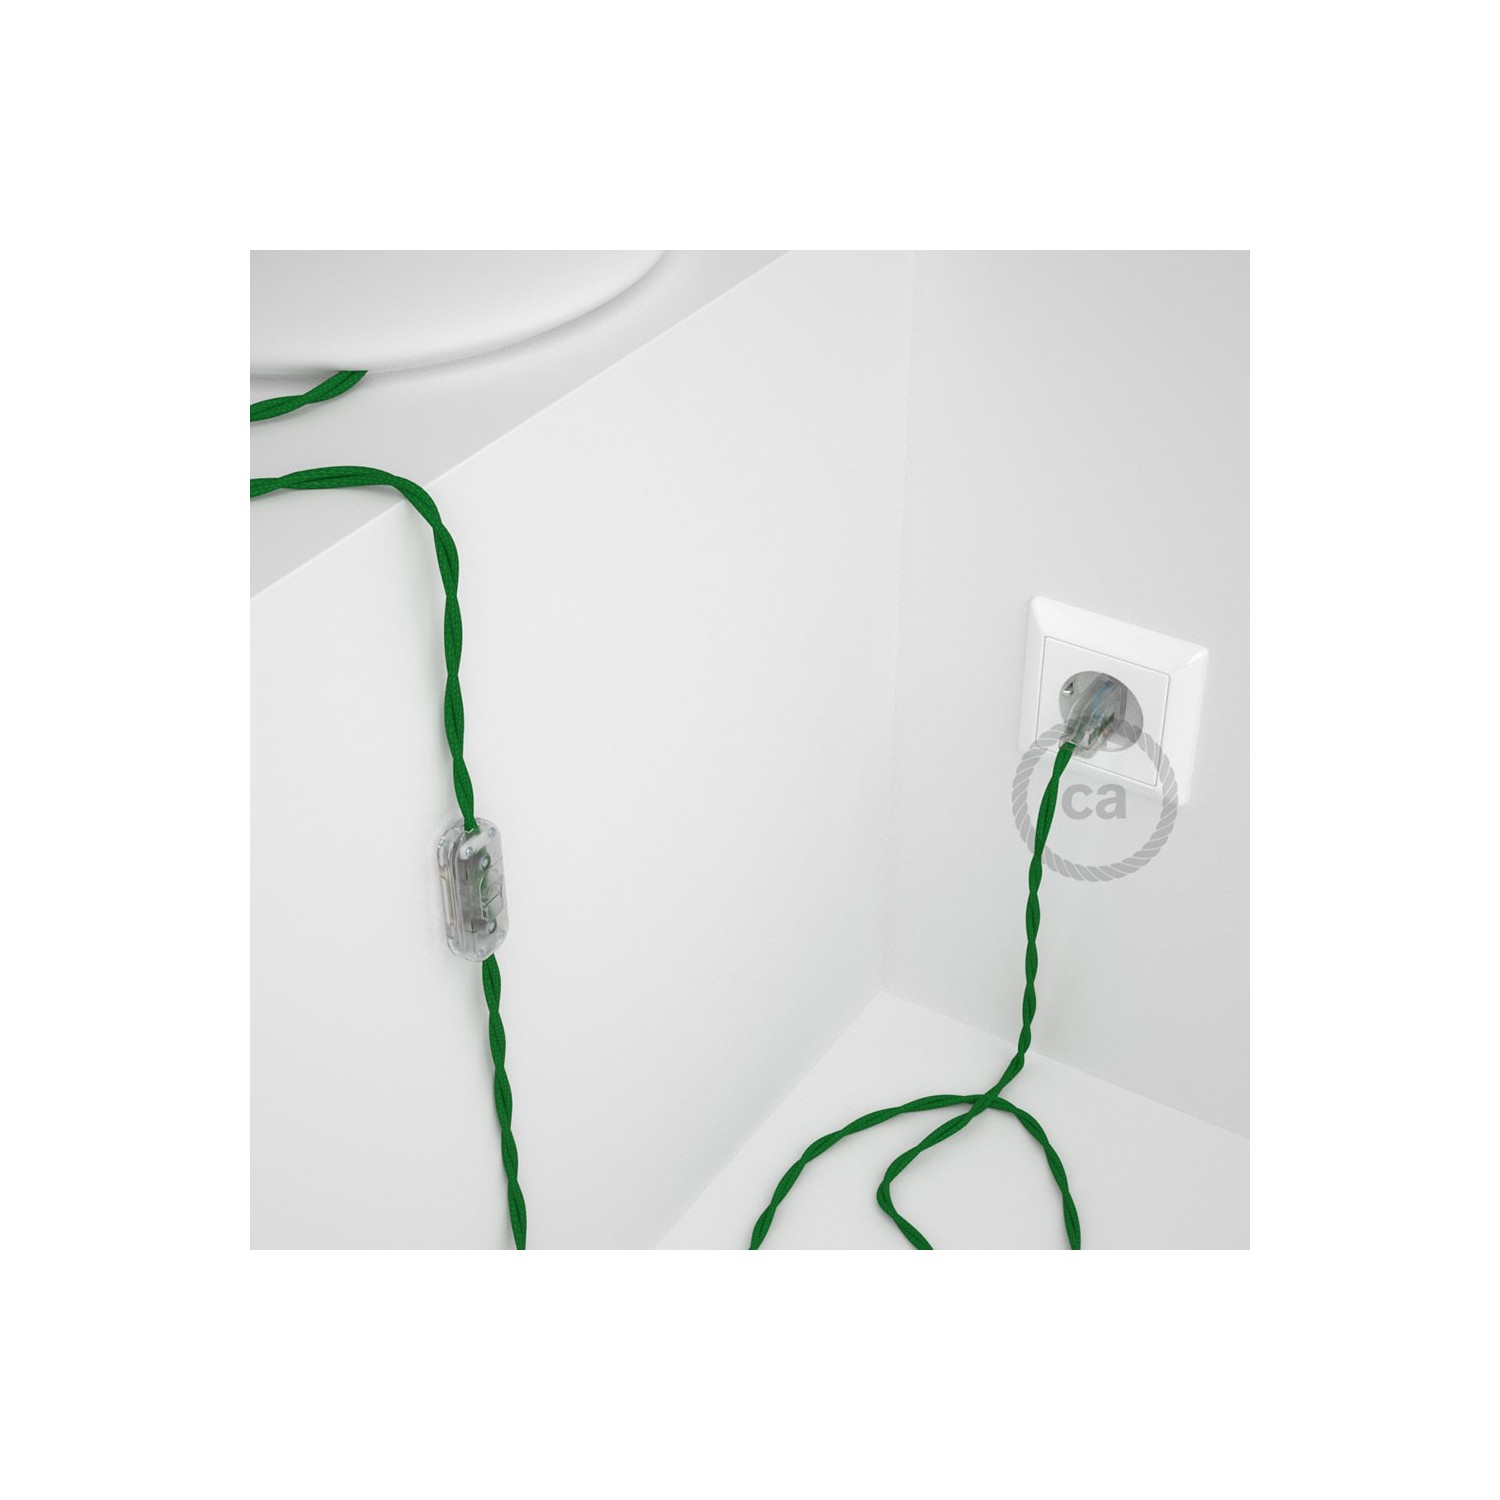 Cablaggio per lampada, cavo TM06 Effetto Seta Verde 1,80 m. Scegli il colore dell'interruttore e della spina.